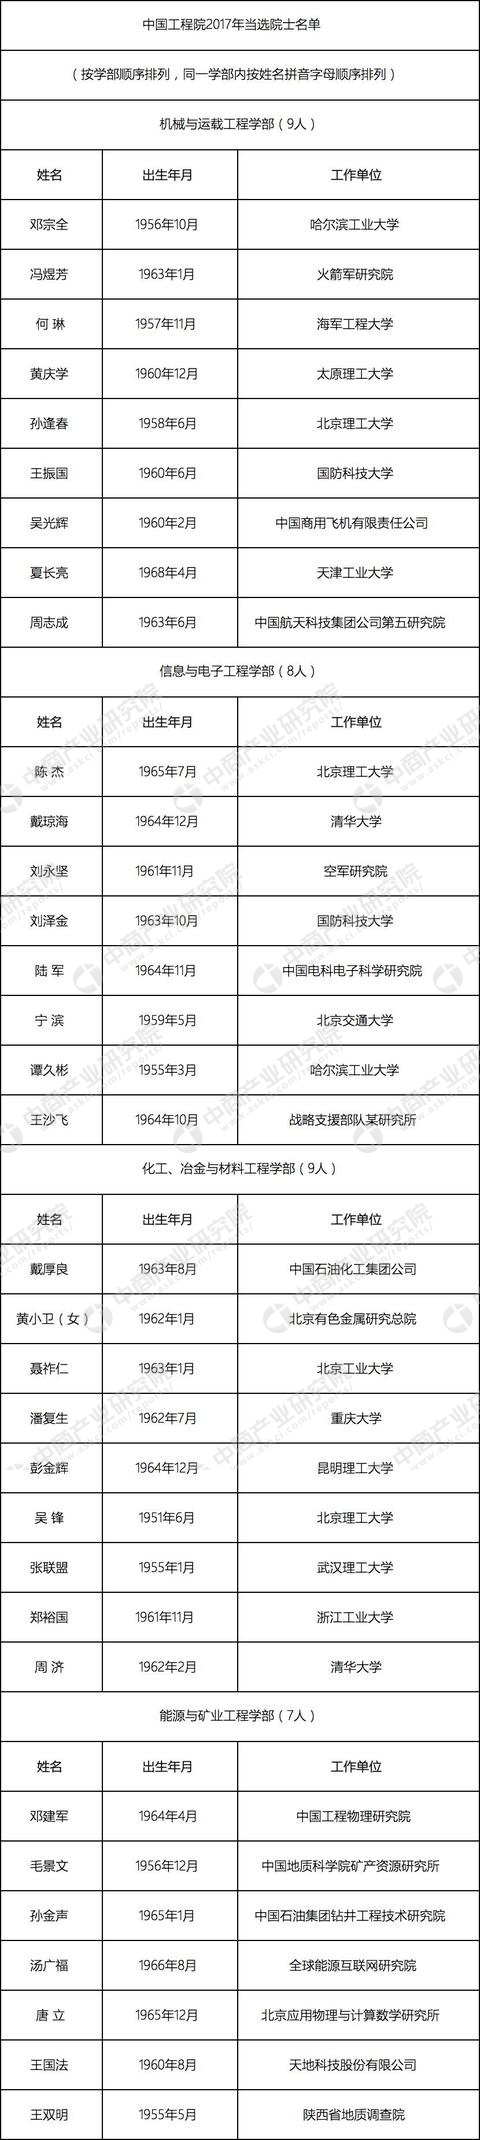 2017年中国高校新增工程院院士名单出炉，哈工大依然很强！